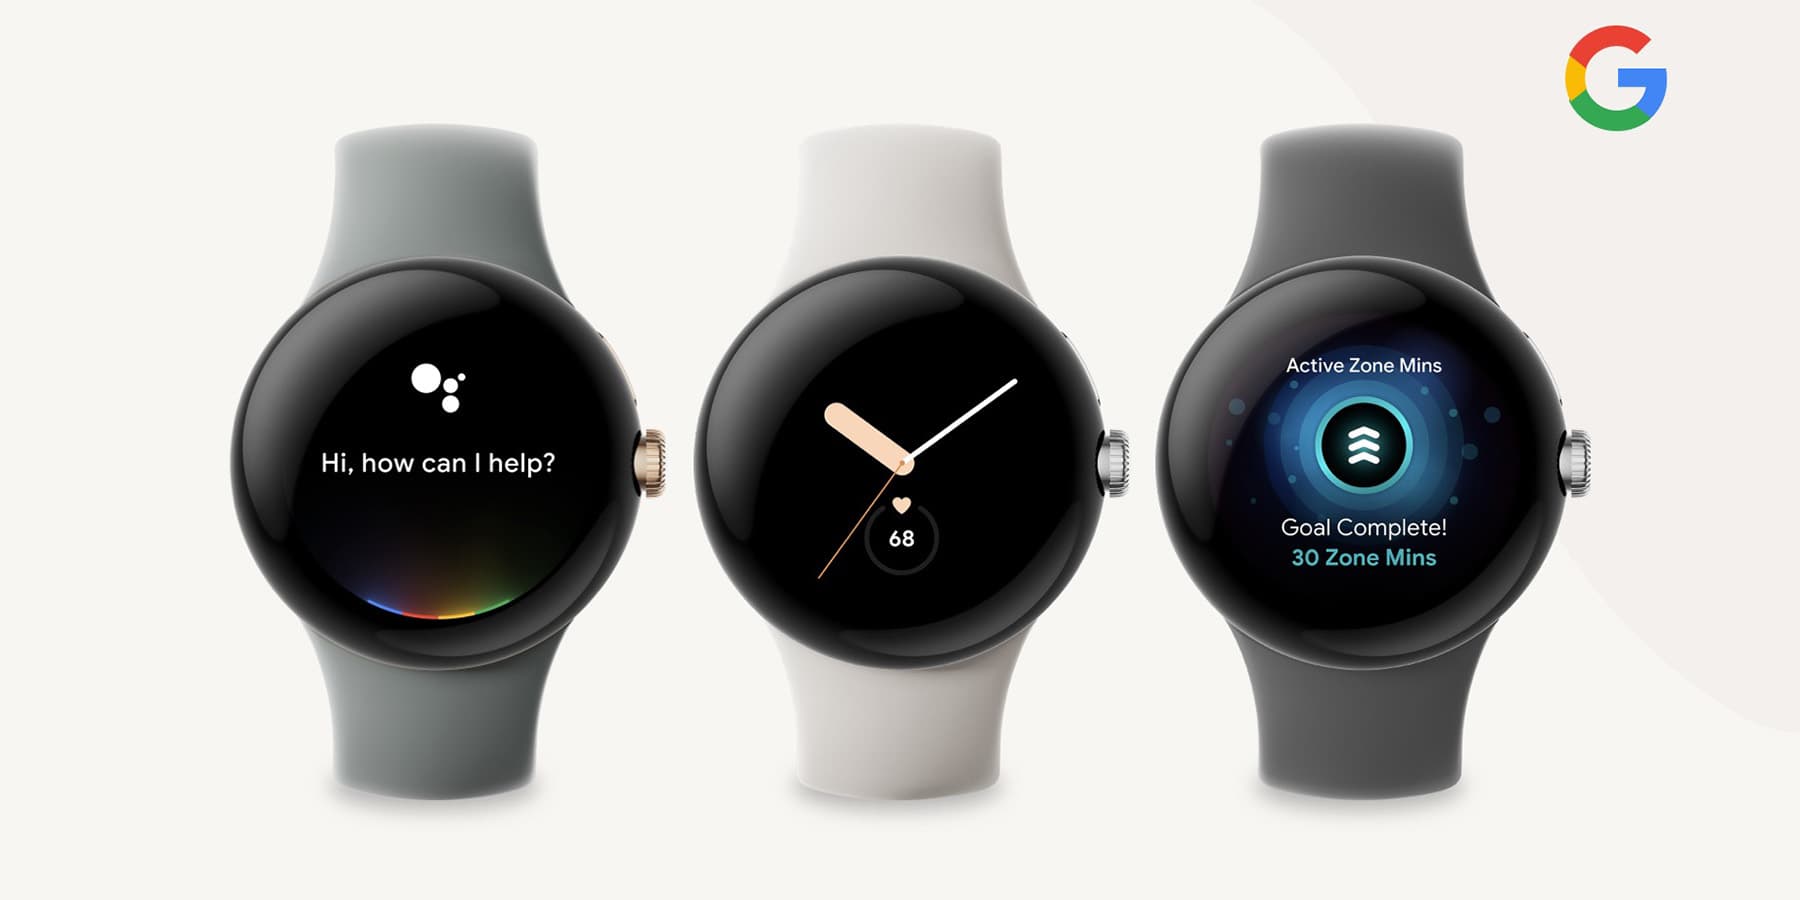 Gerücht: Google wird Pixel Watch zusammen mit Pixel 7 und Pixel 7 Pro vorstellen, die Uhr wird etwa 400 Dollar kosten